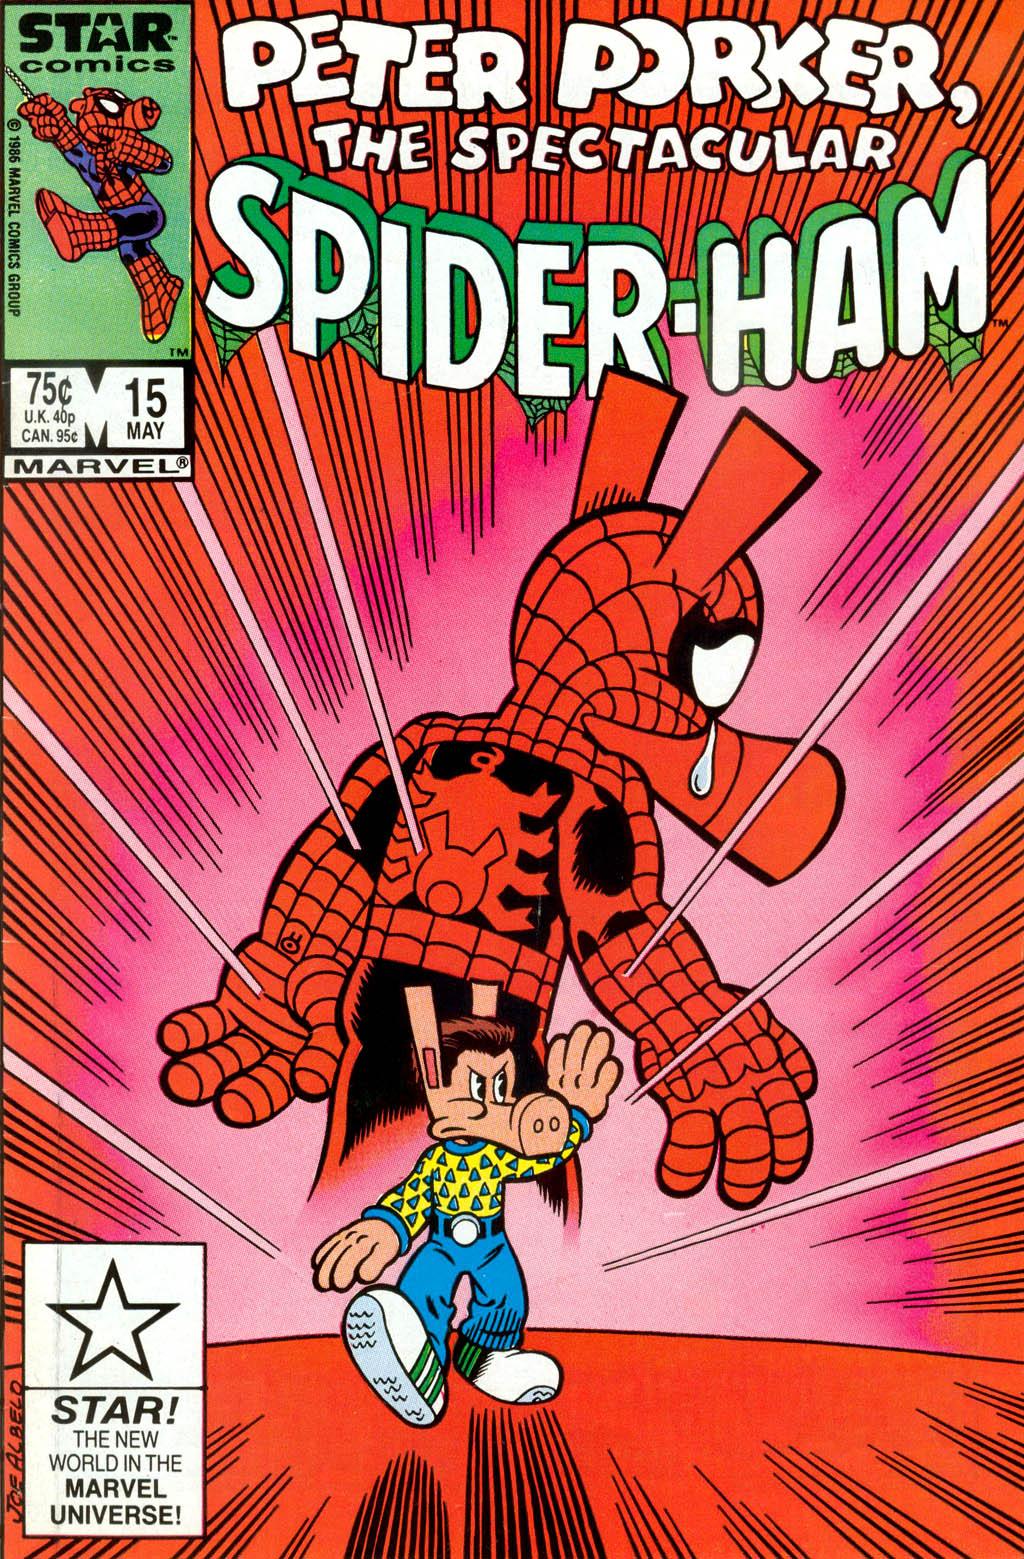 Peter Porker, The Spectacular Spider Ham Vol 1 15. Marvel Database